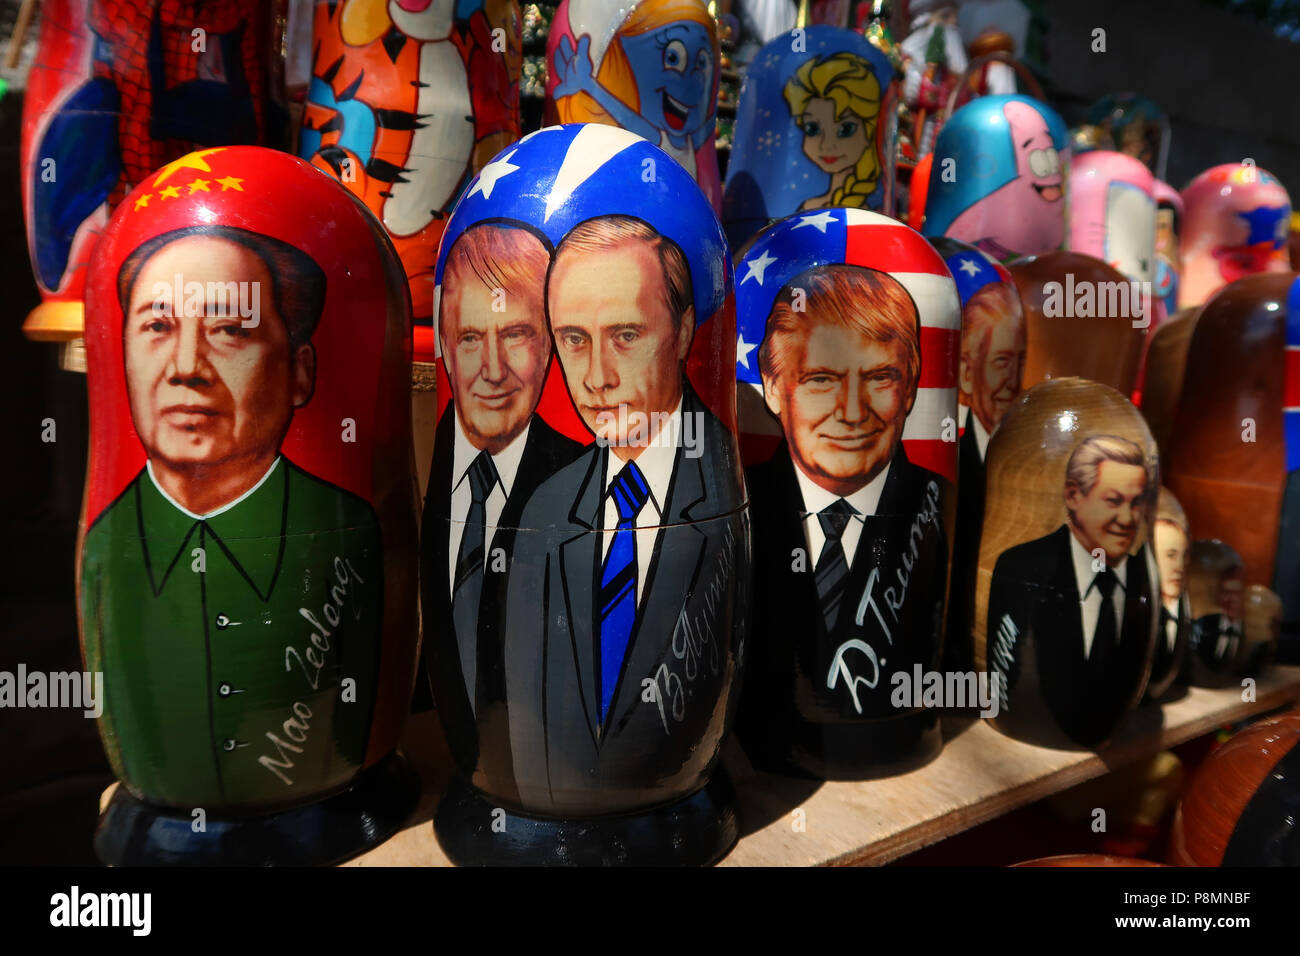 Traditionelle Matroschka-Puppen mit US-Präsident Donald Trump, dem russischen Präsidenten Wladimir Putin und dem chinesischen Vorsitzenden Mao, die in einem Souvenirstand in Kiew oder der ukrainischen Hauptstadt Kiew zum Verkauf stehen Stockfoto